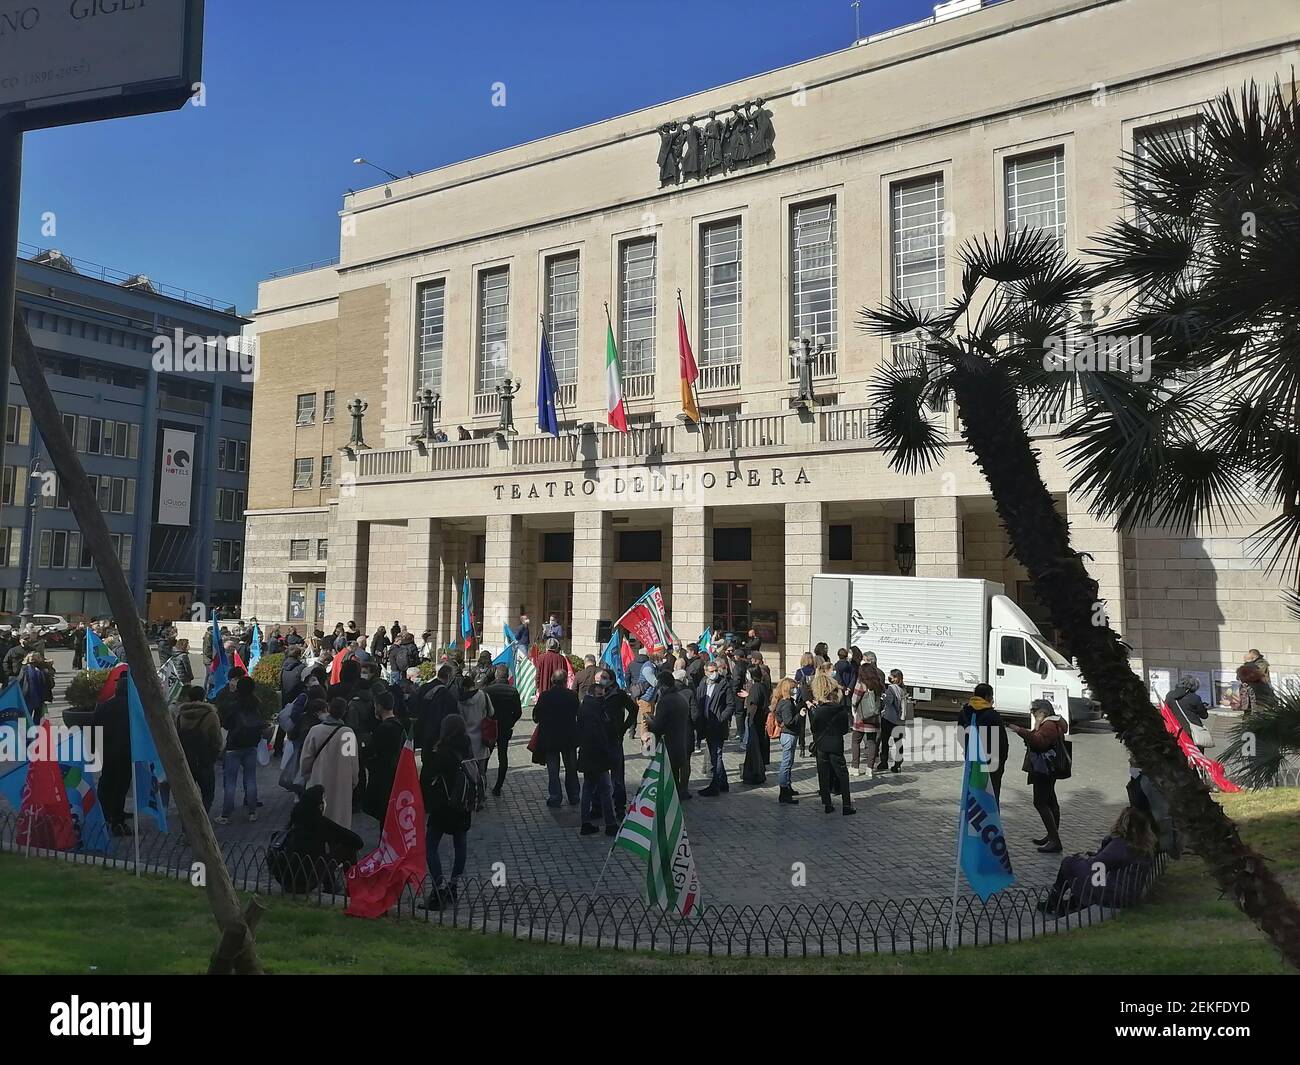 Roma, Italia - 23 febbraio 2021: Covid, protesta al Teatro dell'Opera Stockfoto